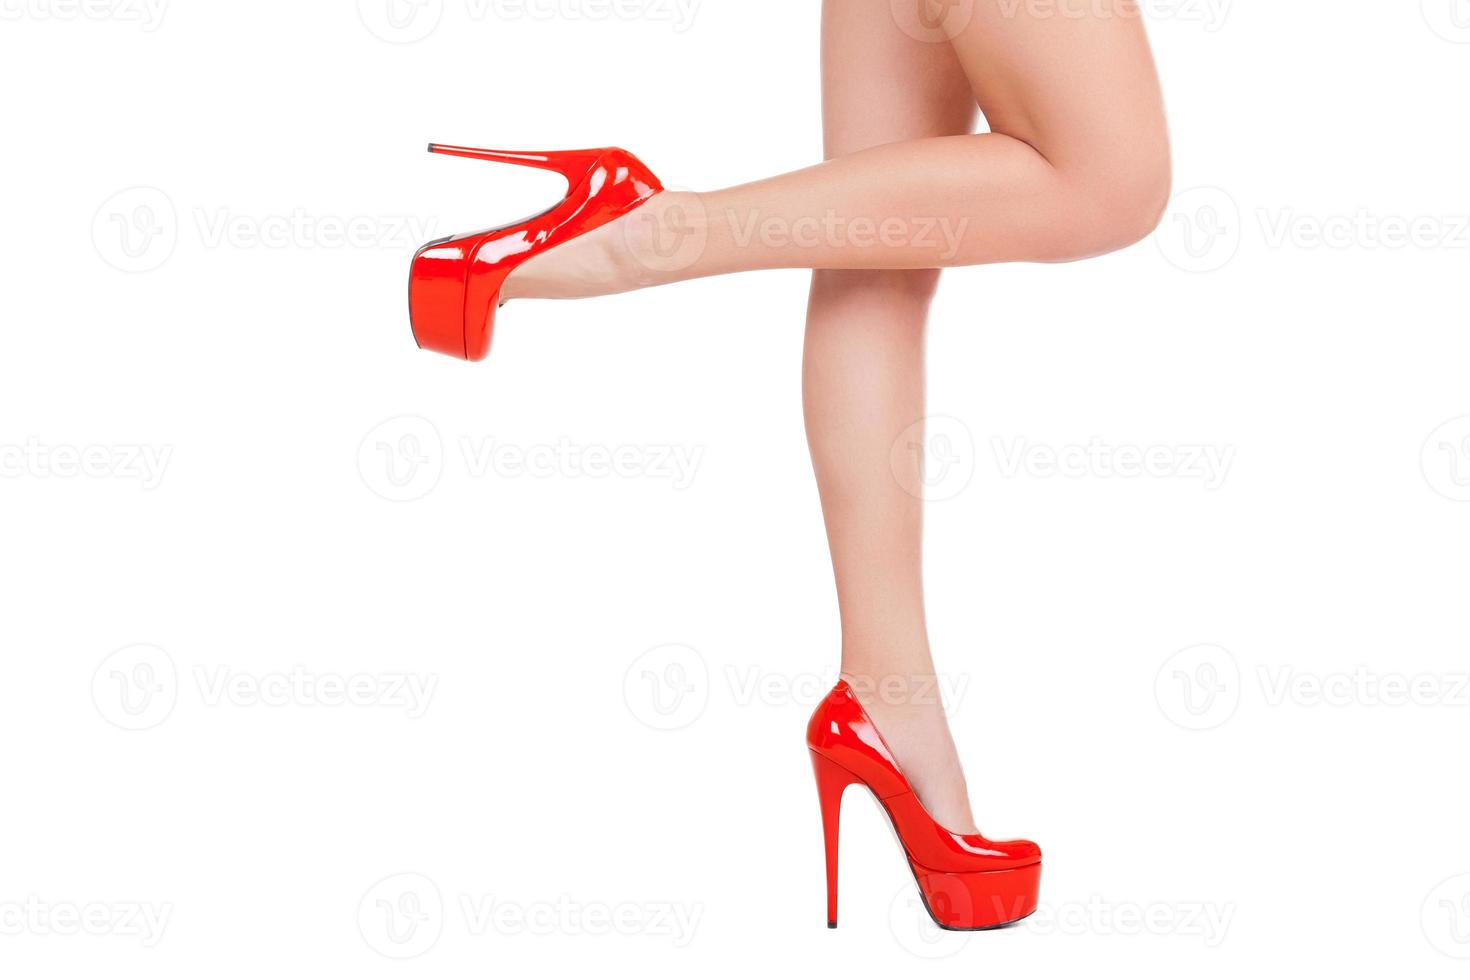 graça e elegância. Vista lateral de close-up de mulher bonita em sapatos vermelhos de salto alto posando em pé isolado no branco foto